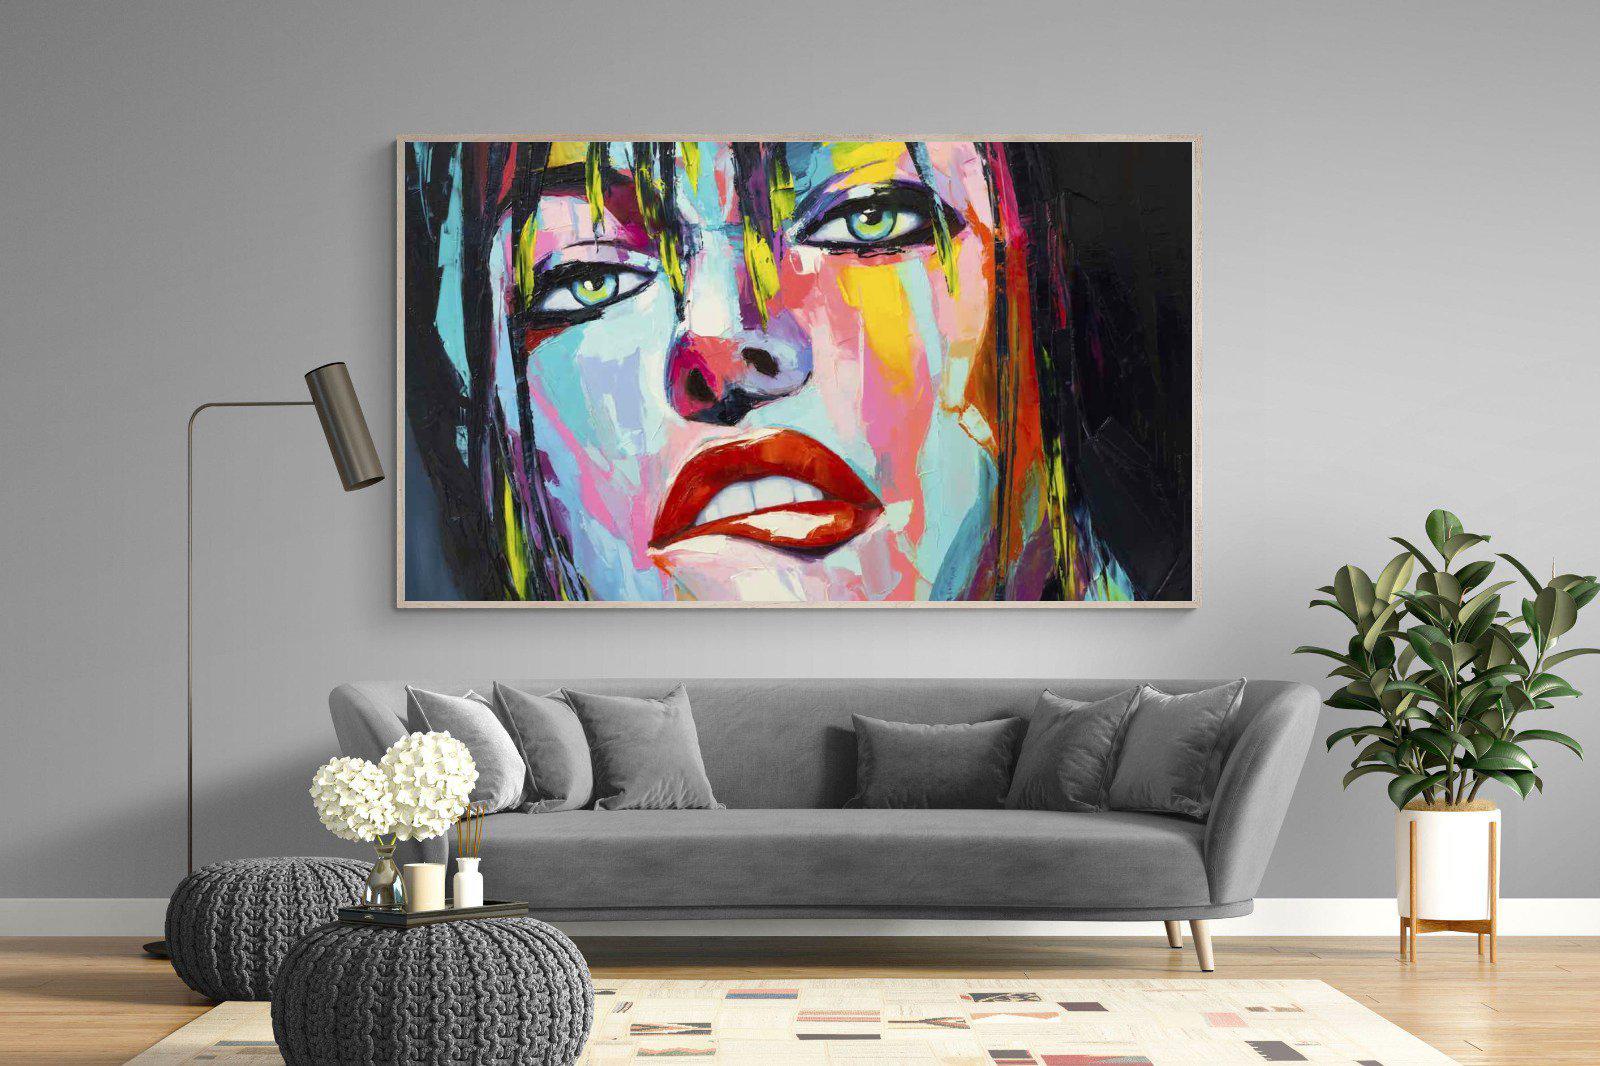 Risky-Wall_Art-220 x 130cm-Mounted Canvas-Wood-Pixalot